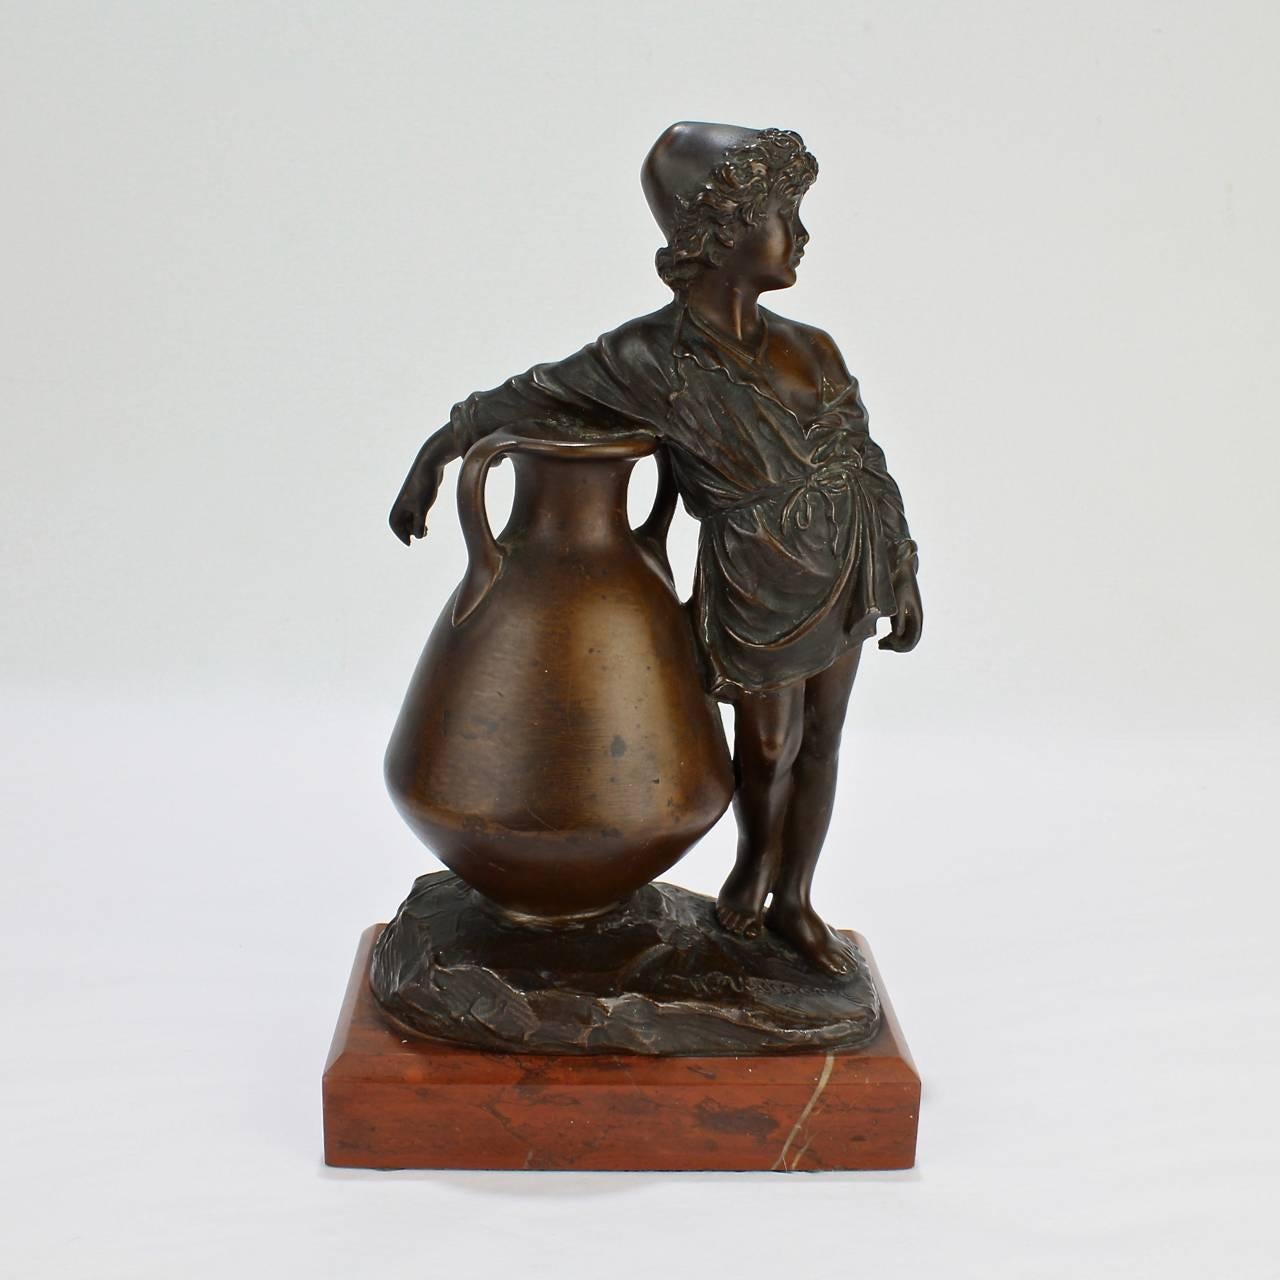 Un bon bronze de Belle Epocha représentant un jeune garçon à côté d'une grande amphore ou d'un vase.

Le style s'inspire de l'orientalisme et de divers mouvements de renouveau actifs en Europe à la fin du 19e siècle.

Monté sur un socle en